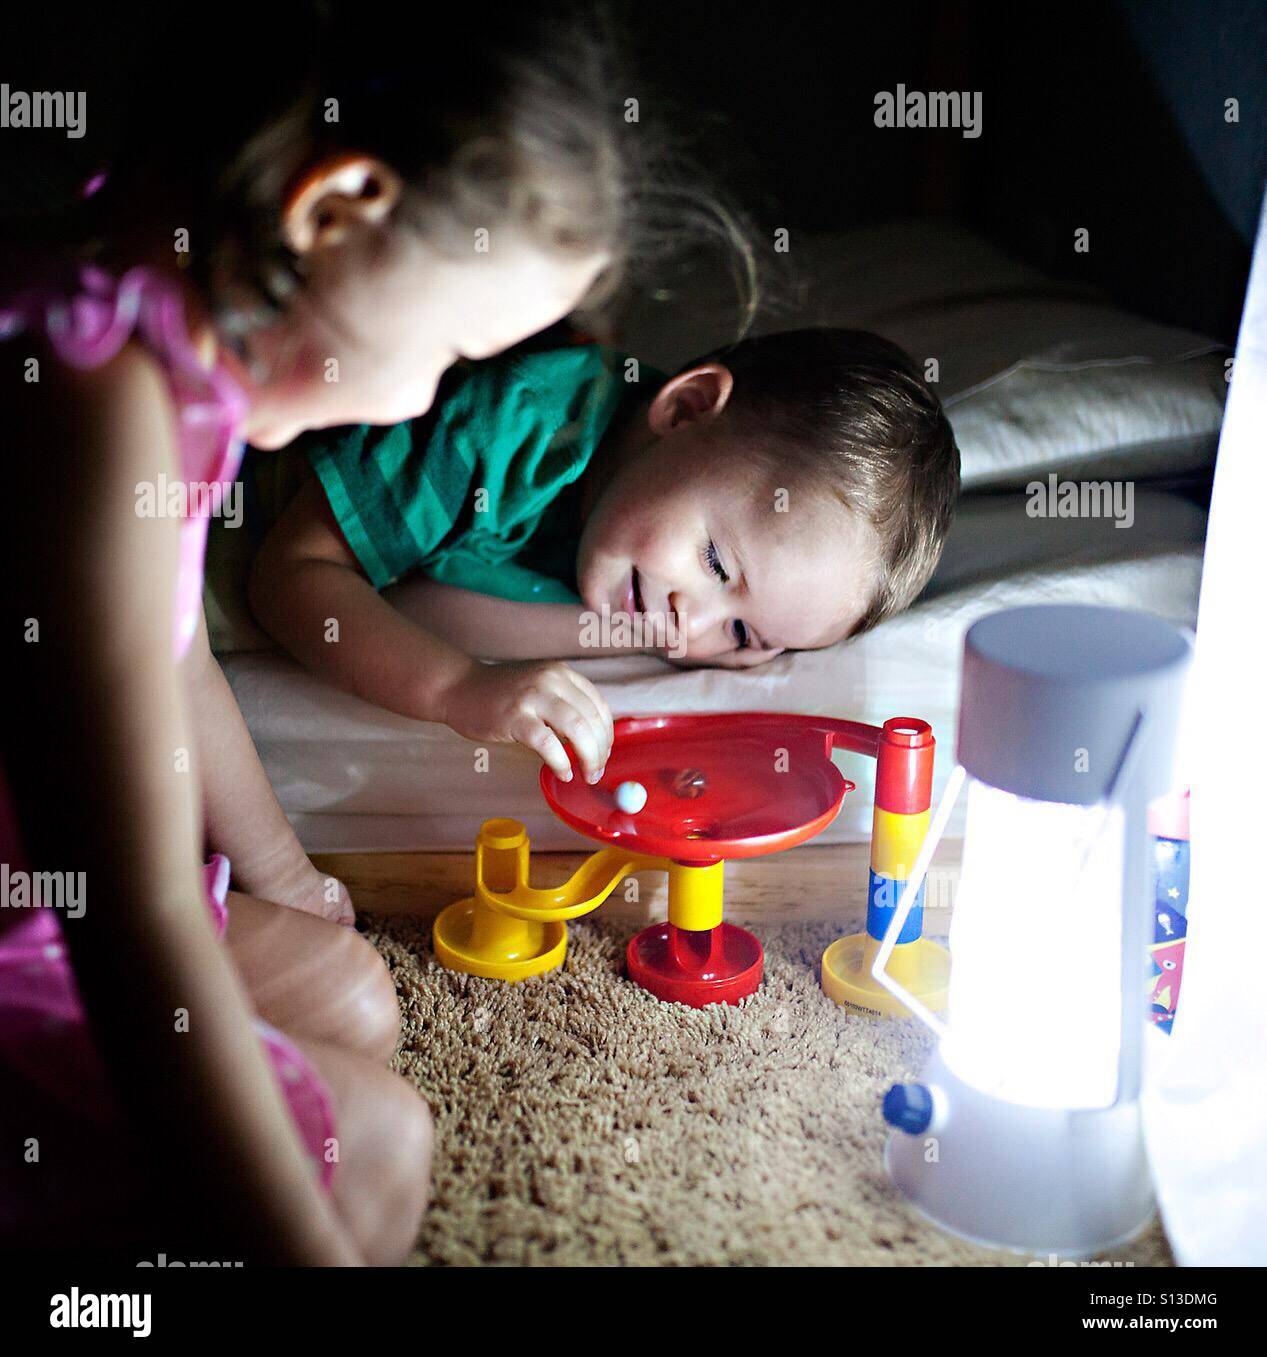 Tout-petit et votre fille jouer avec un jouet en exécuter à l'heure du coucher par lampe lumière Banque D'Images